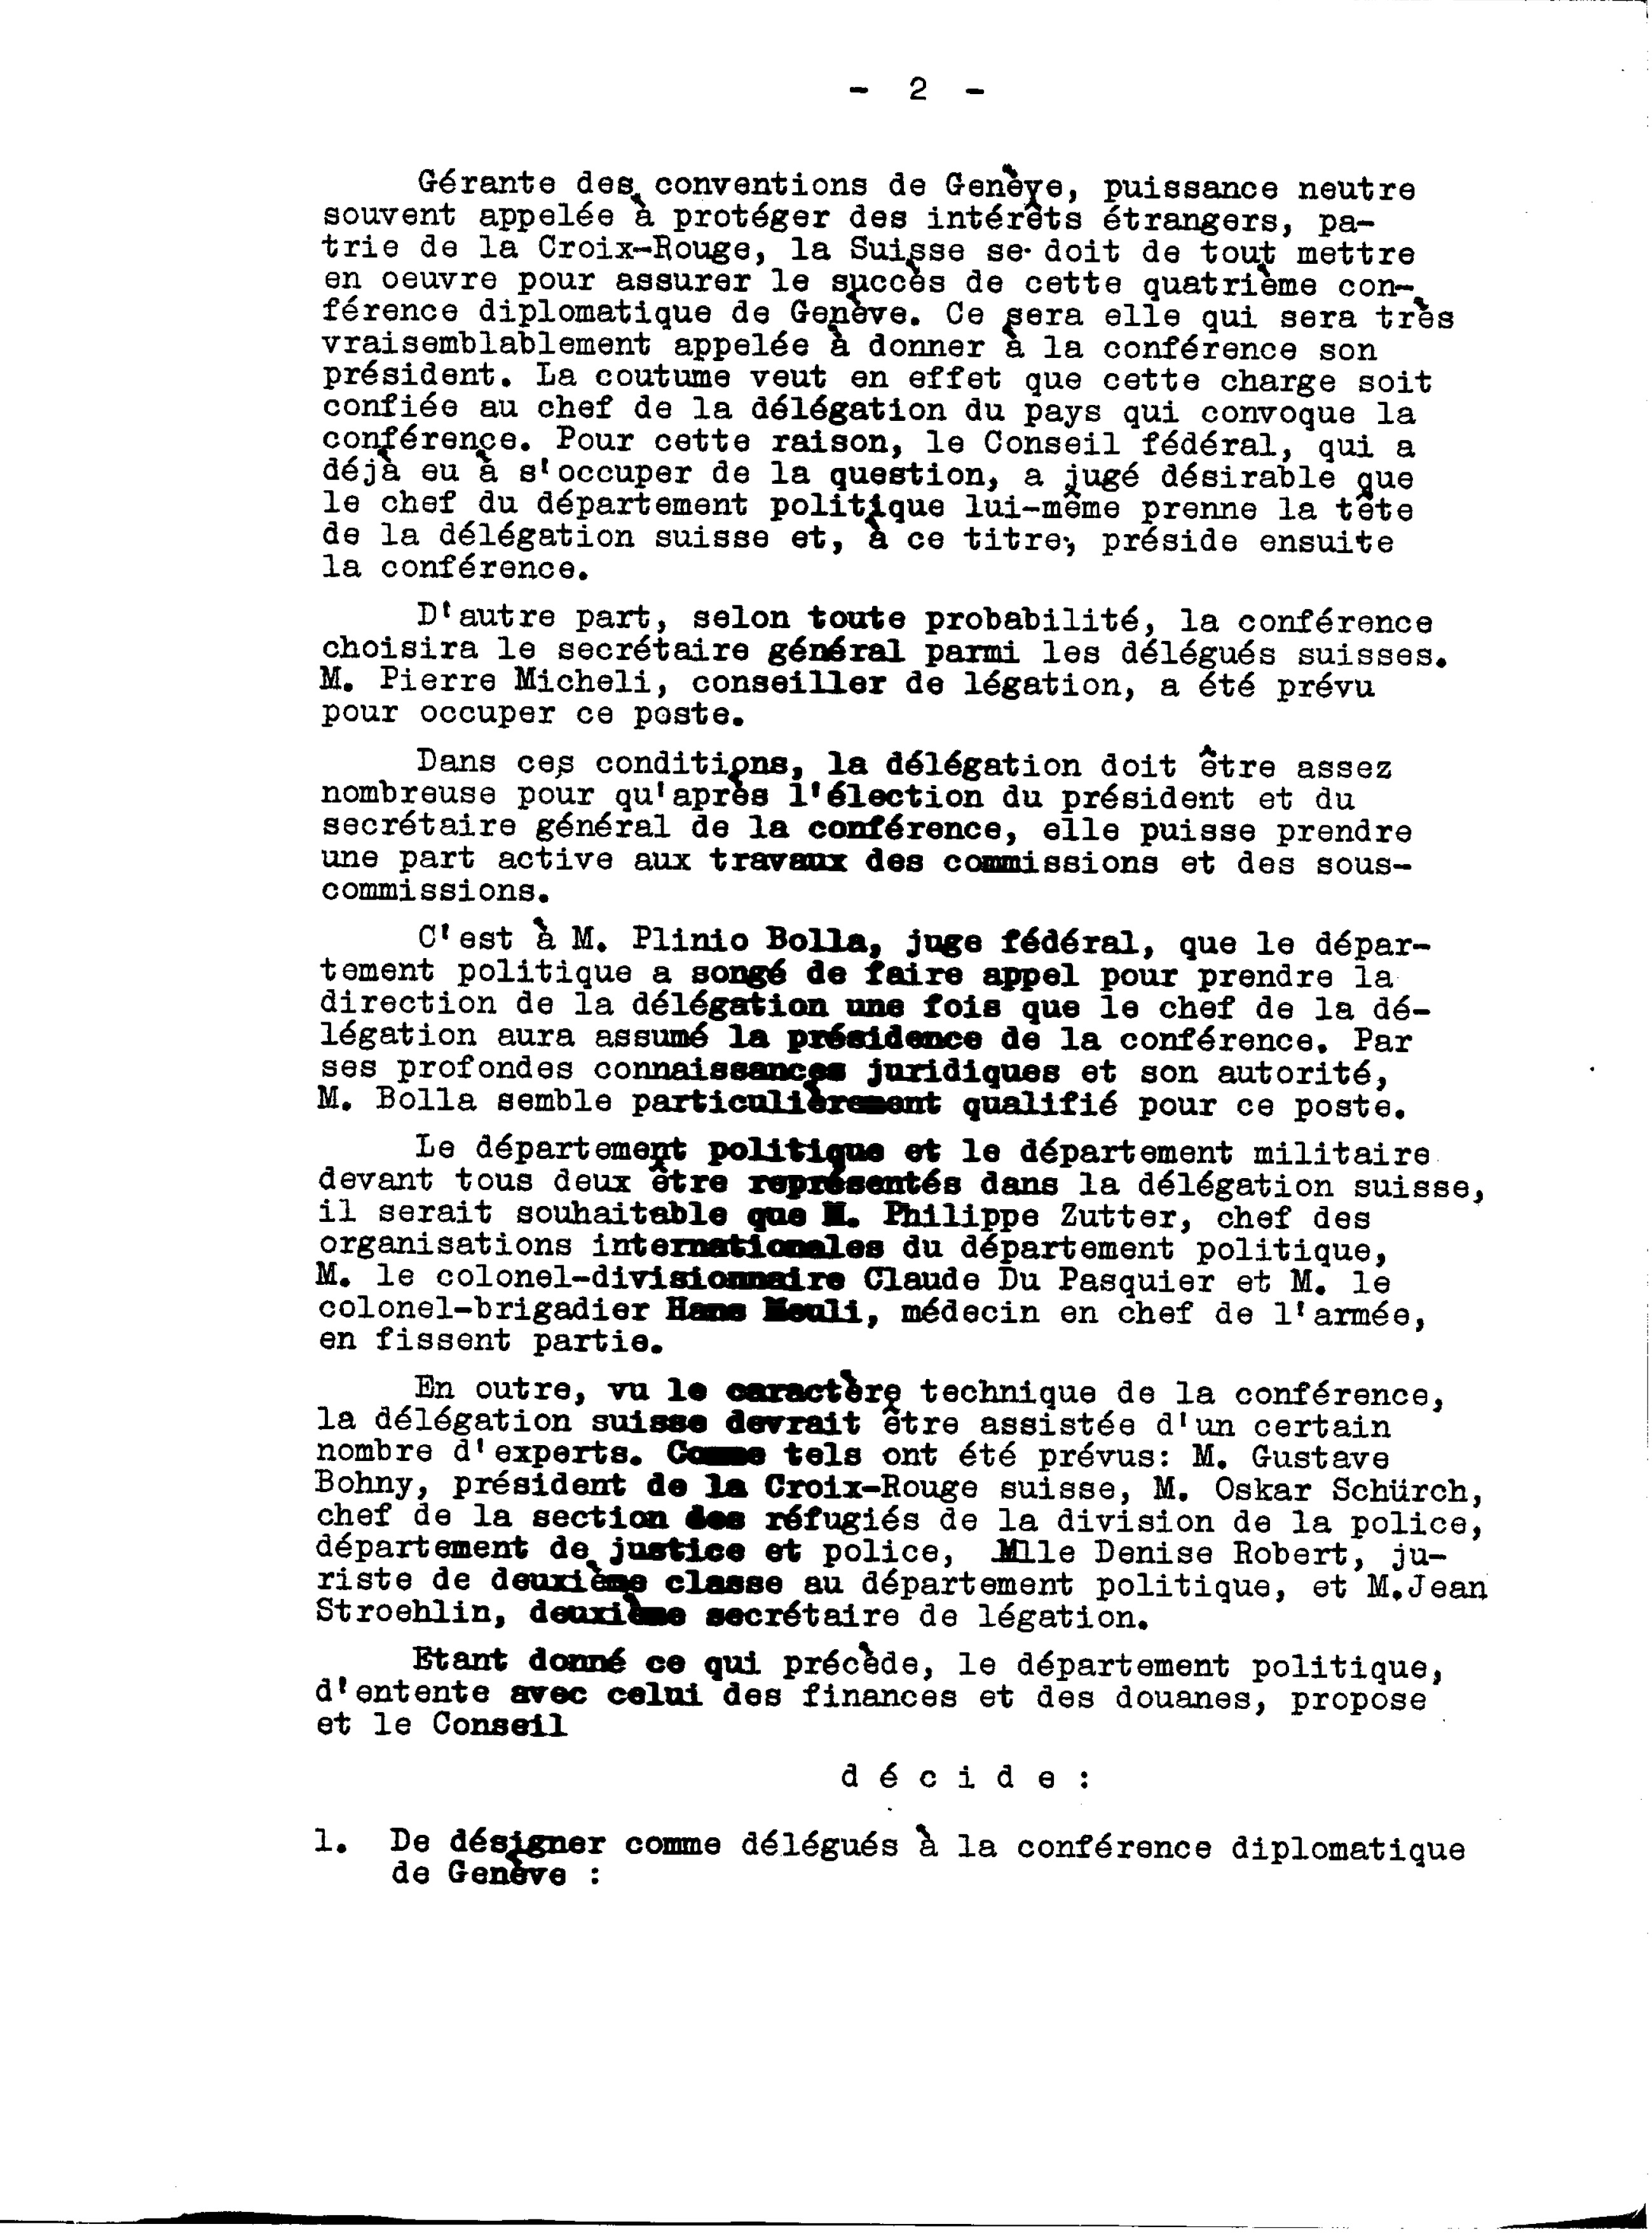 Decisione del Consiglio federale del 1° aprile 1949